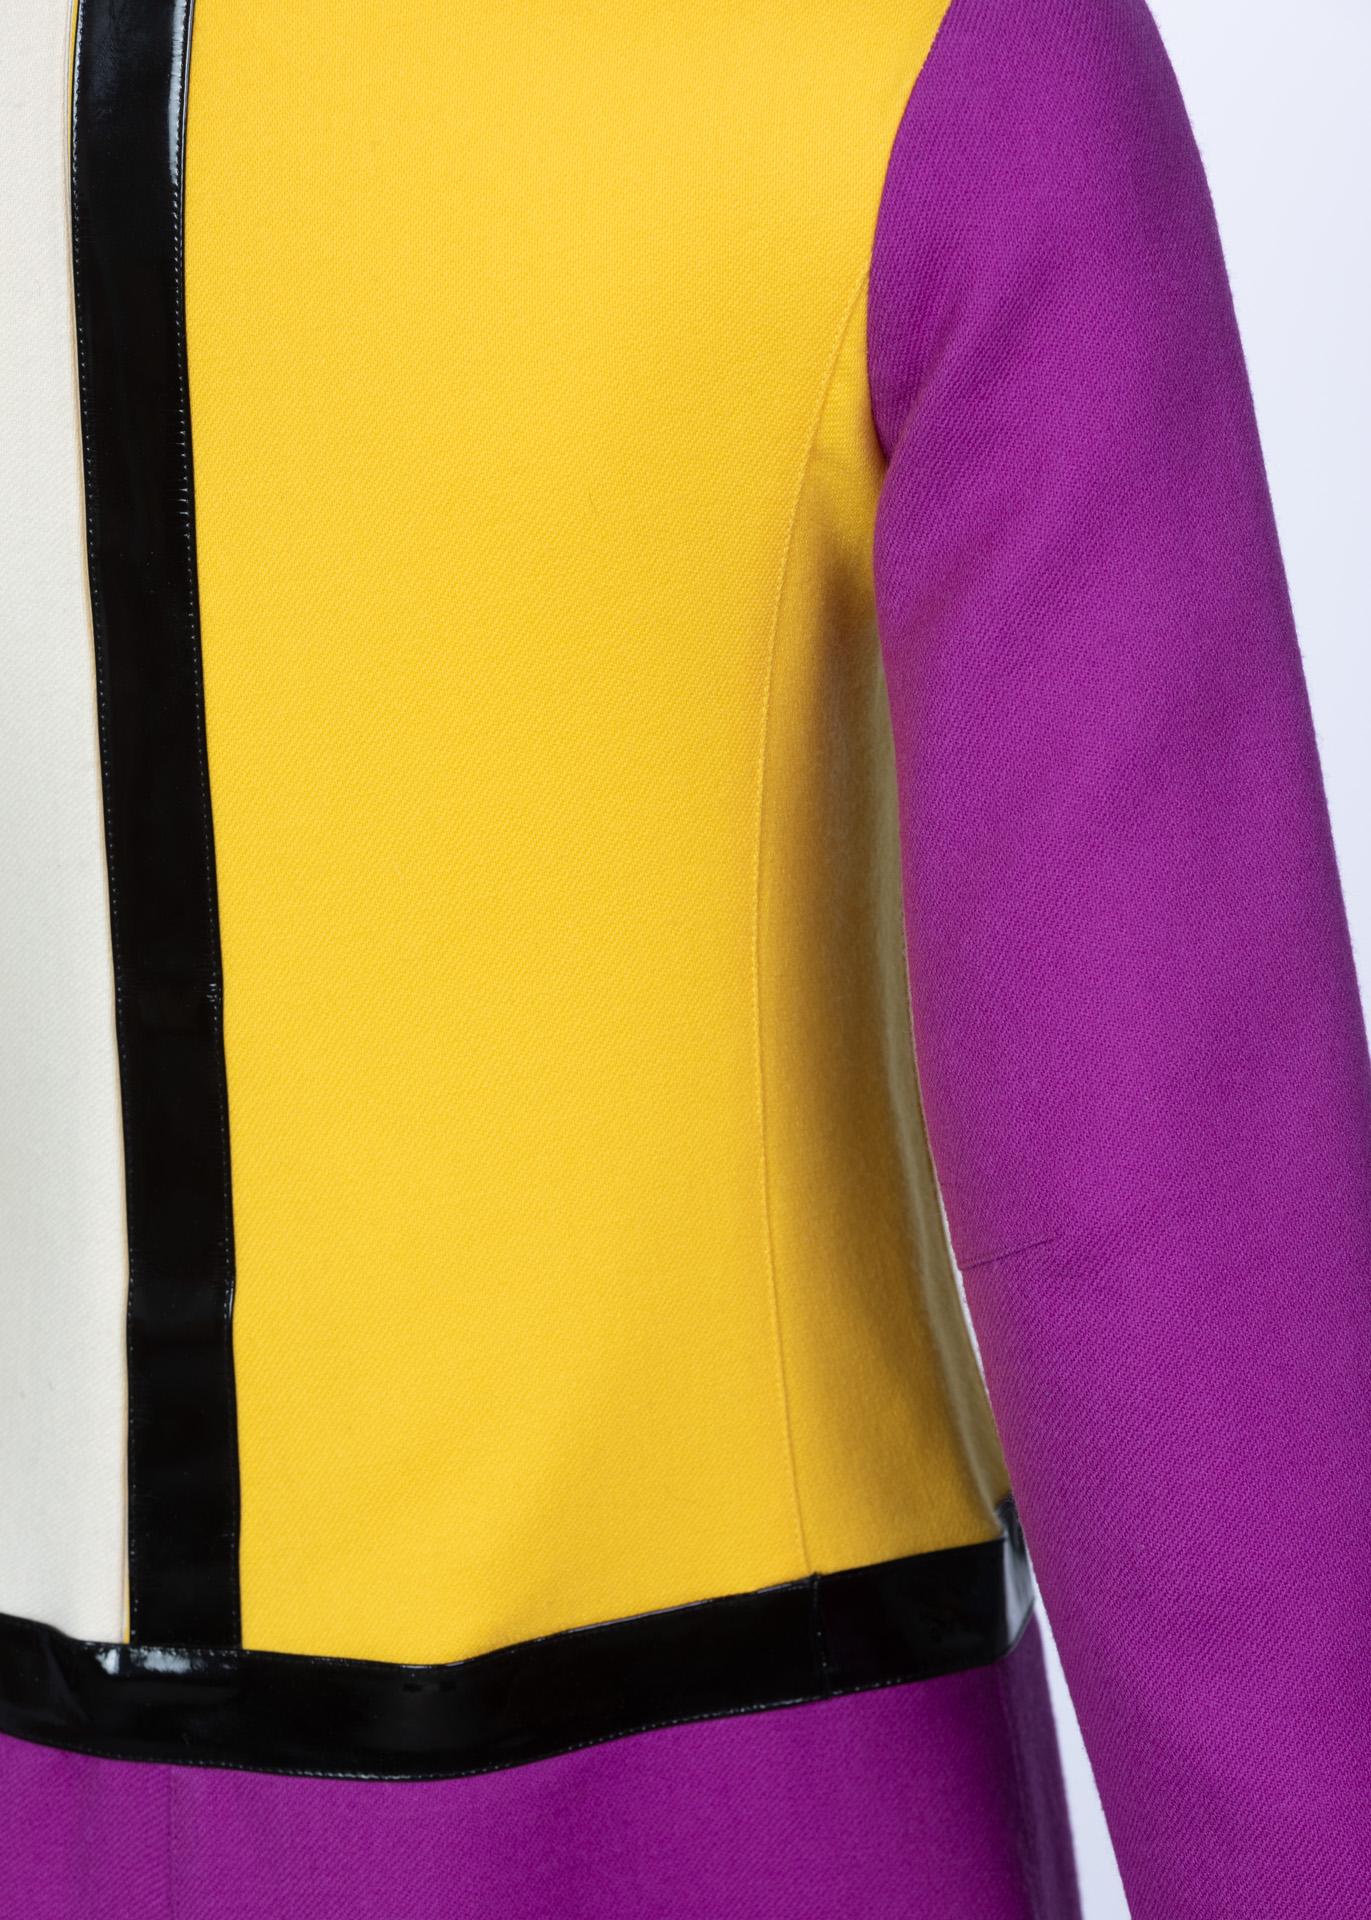 Women's Courrèges Wool Color Block Patent Leather Mondrian Mini Dress, 1960s